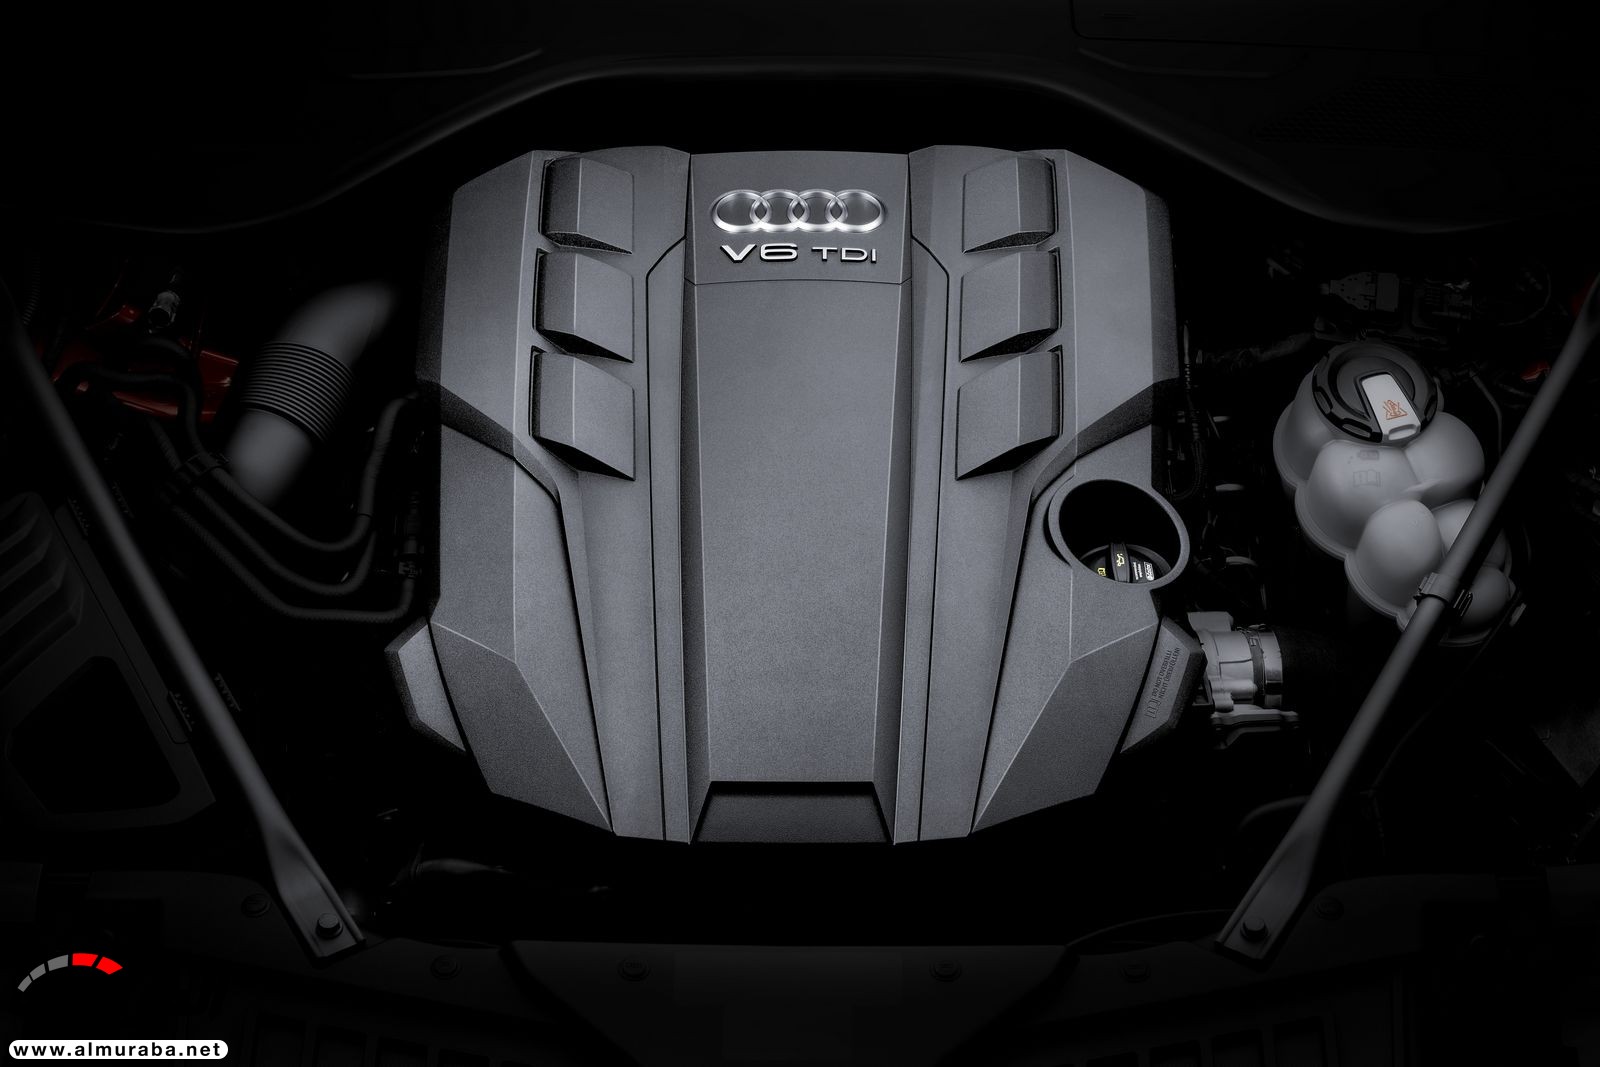 أودي A8 2018 الجديدة كلياً تكشف نفسها بتصميم وتقنيات متطورة "معلومات + 100 صورة" Audi A8 24